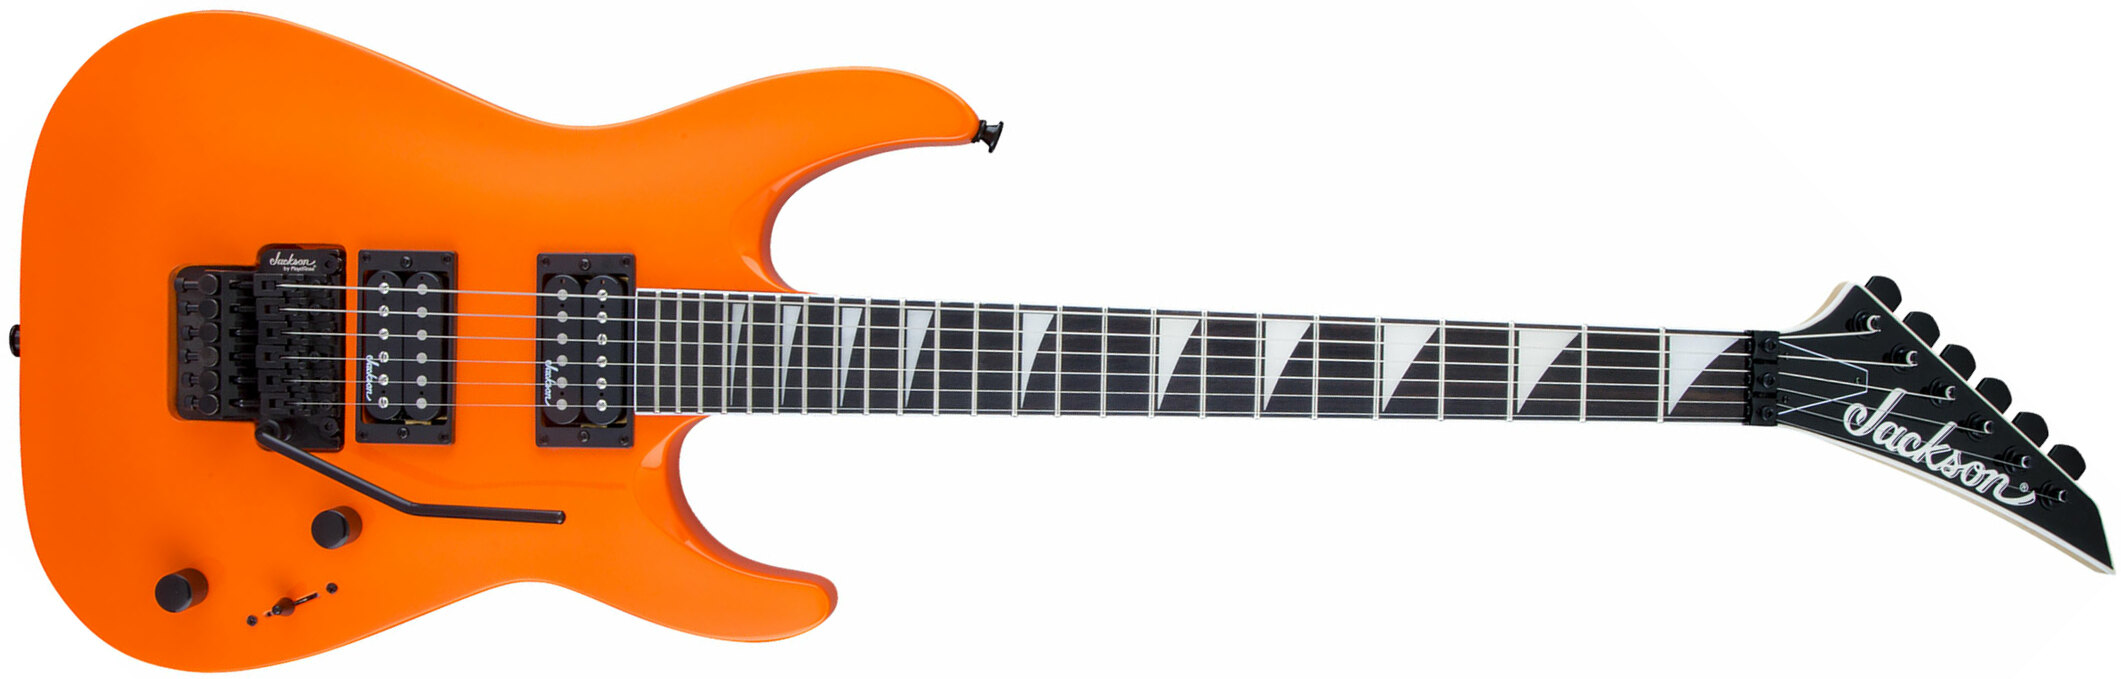 Jackson Dinky Archtop Js32 Dka 2h Fr Ama - Neon Orange - Guitarra eléctrica de doble corte. - Main picture